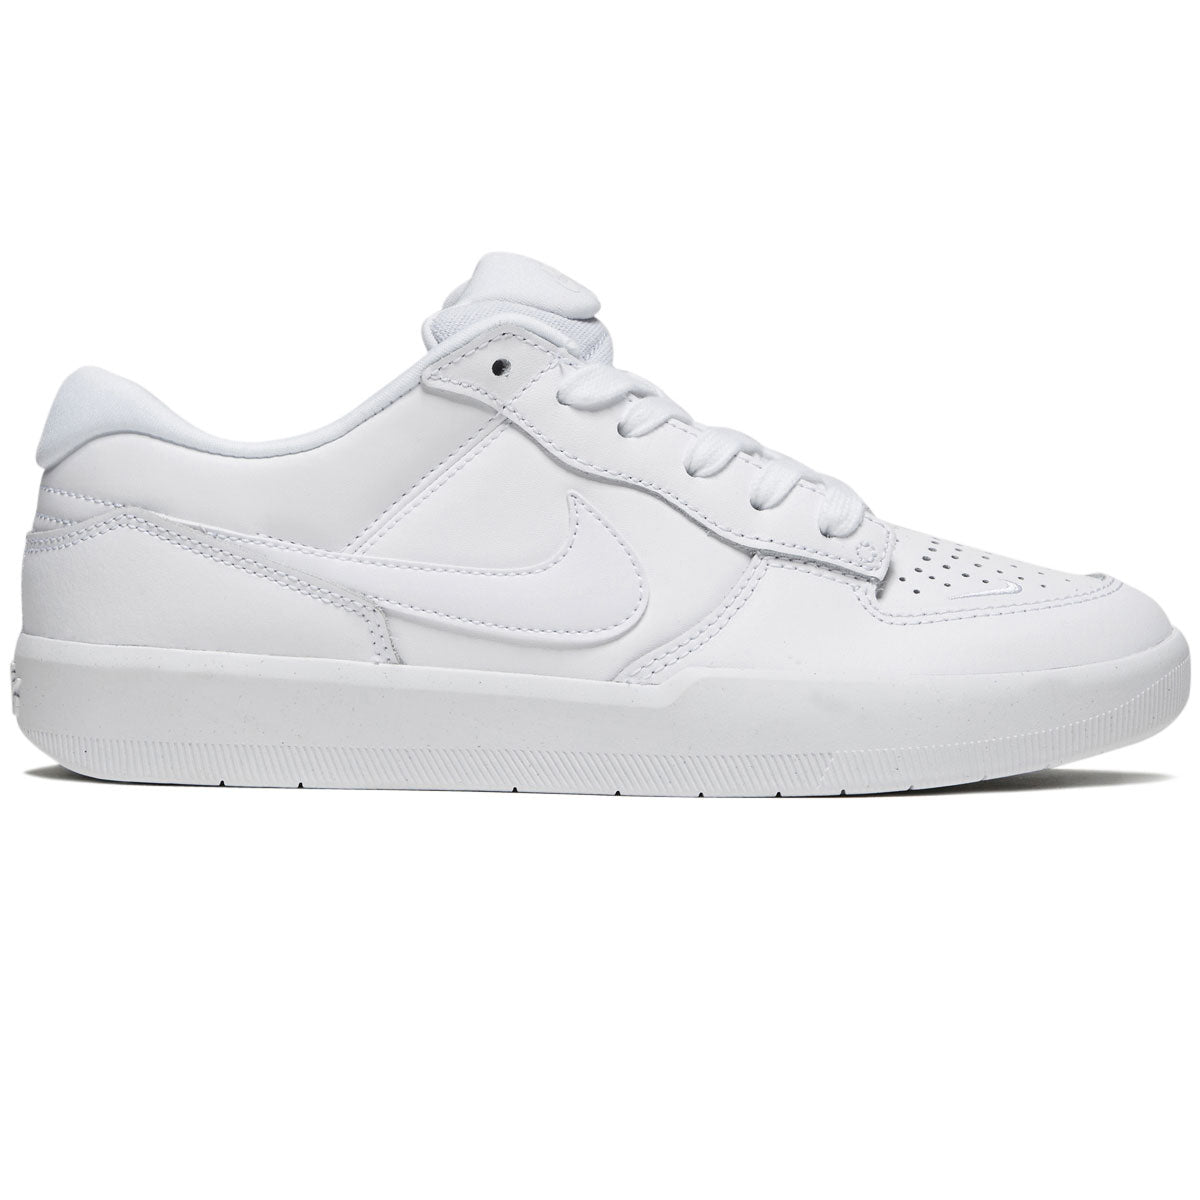 Nike SB 58 Premium Leather Shoes - White/White/White/White CCS